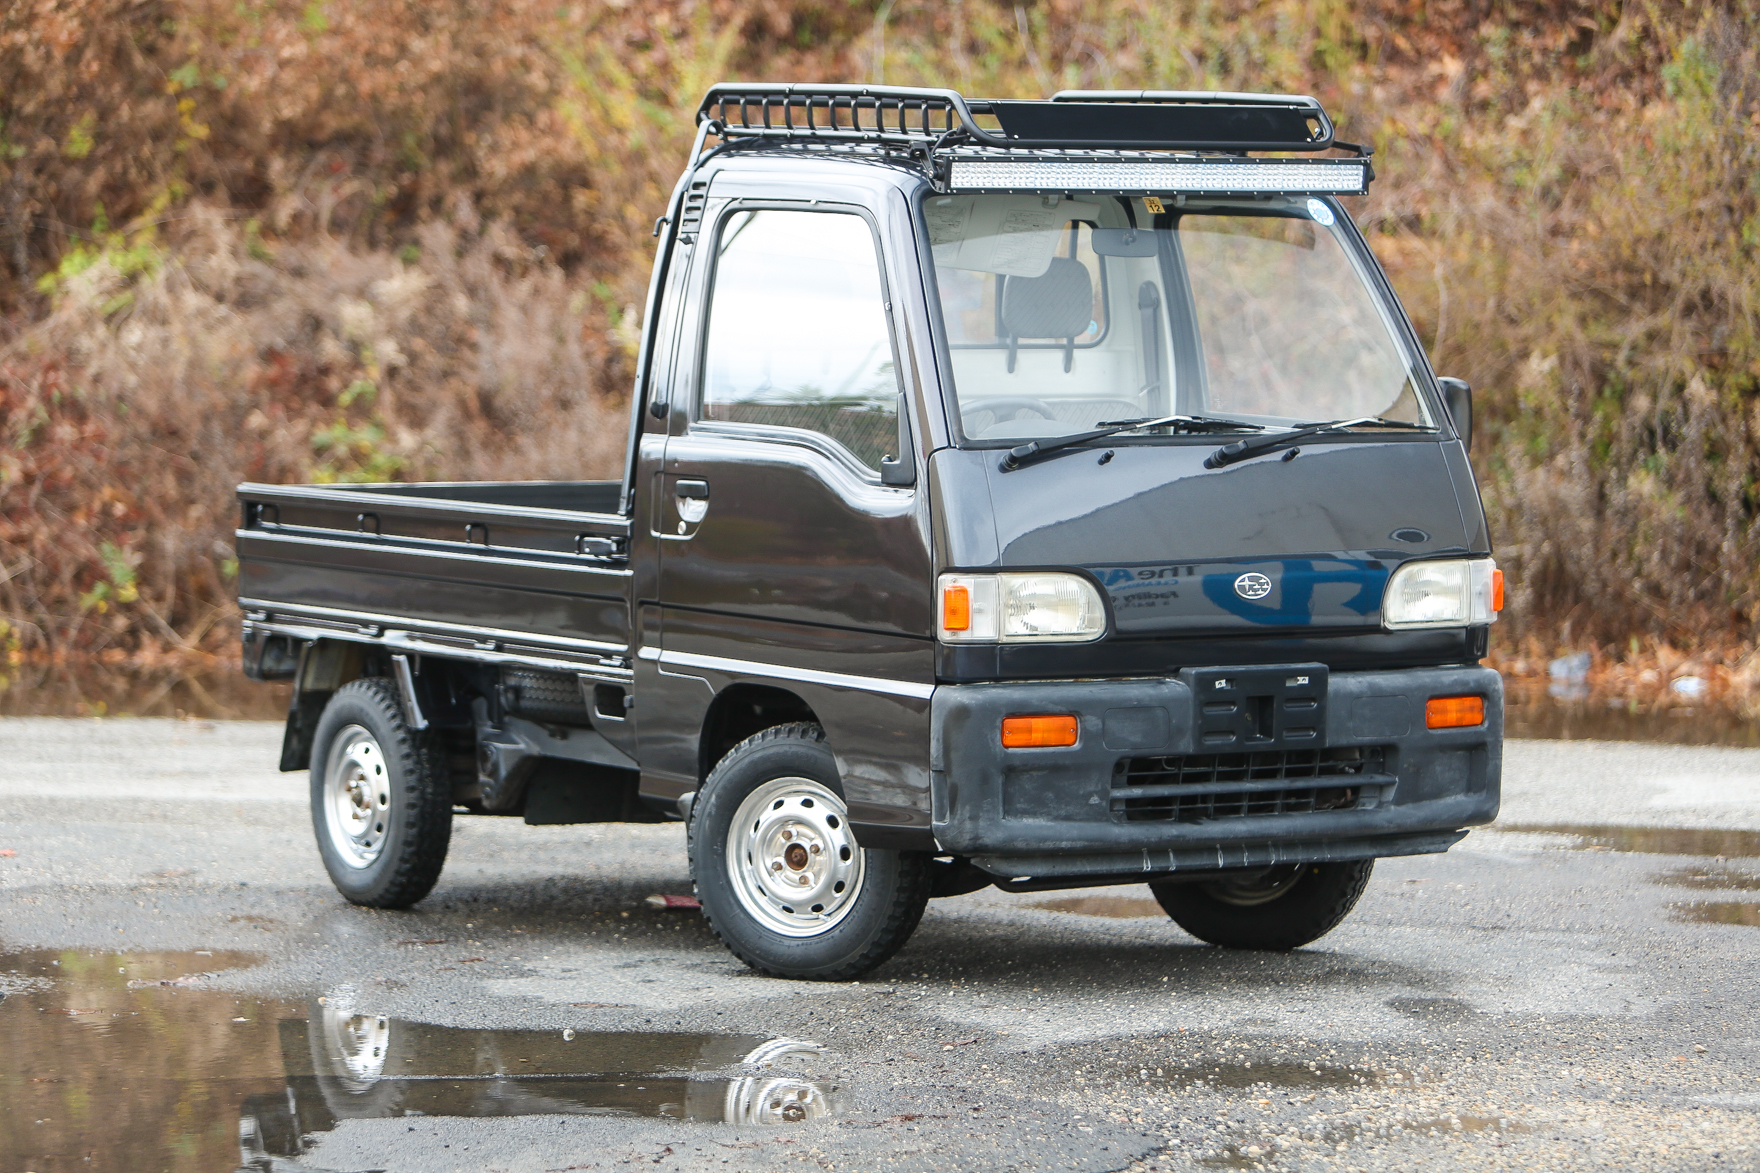 1992 Subaru Sambar - $5,950